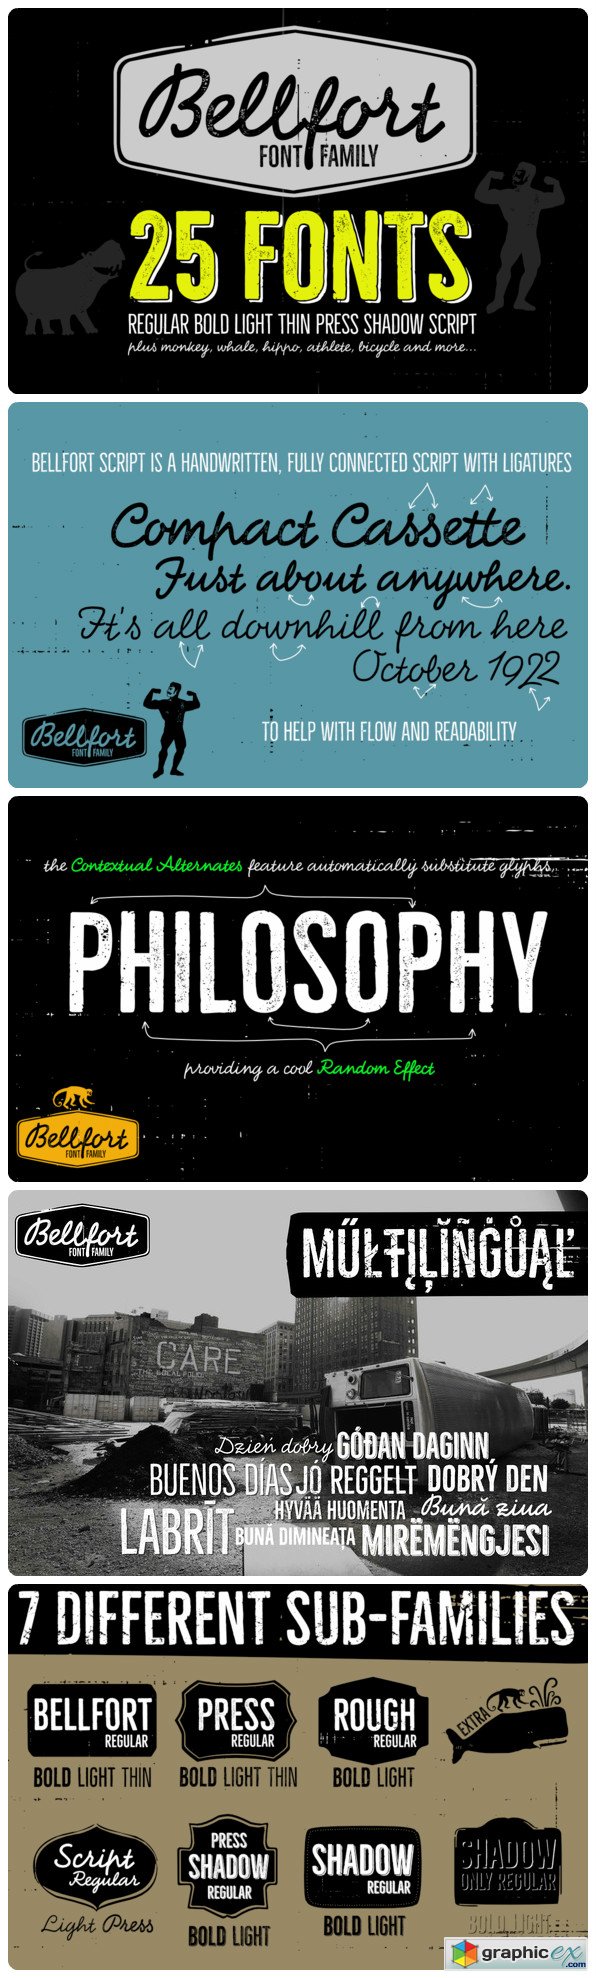  Bellfort Family - 25 fonts